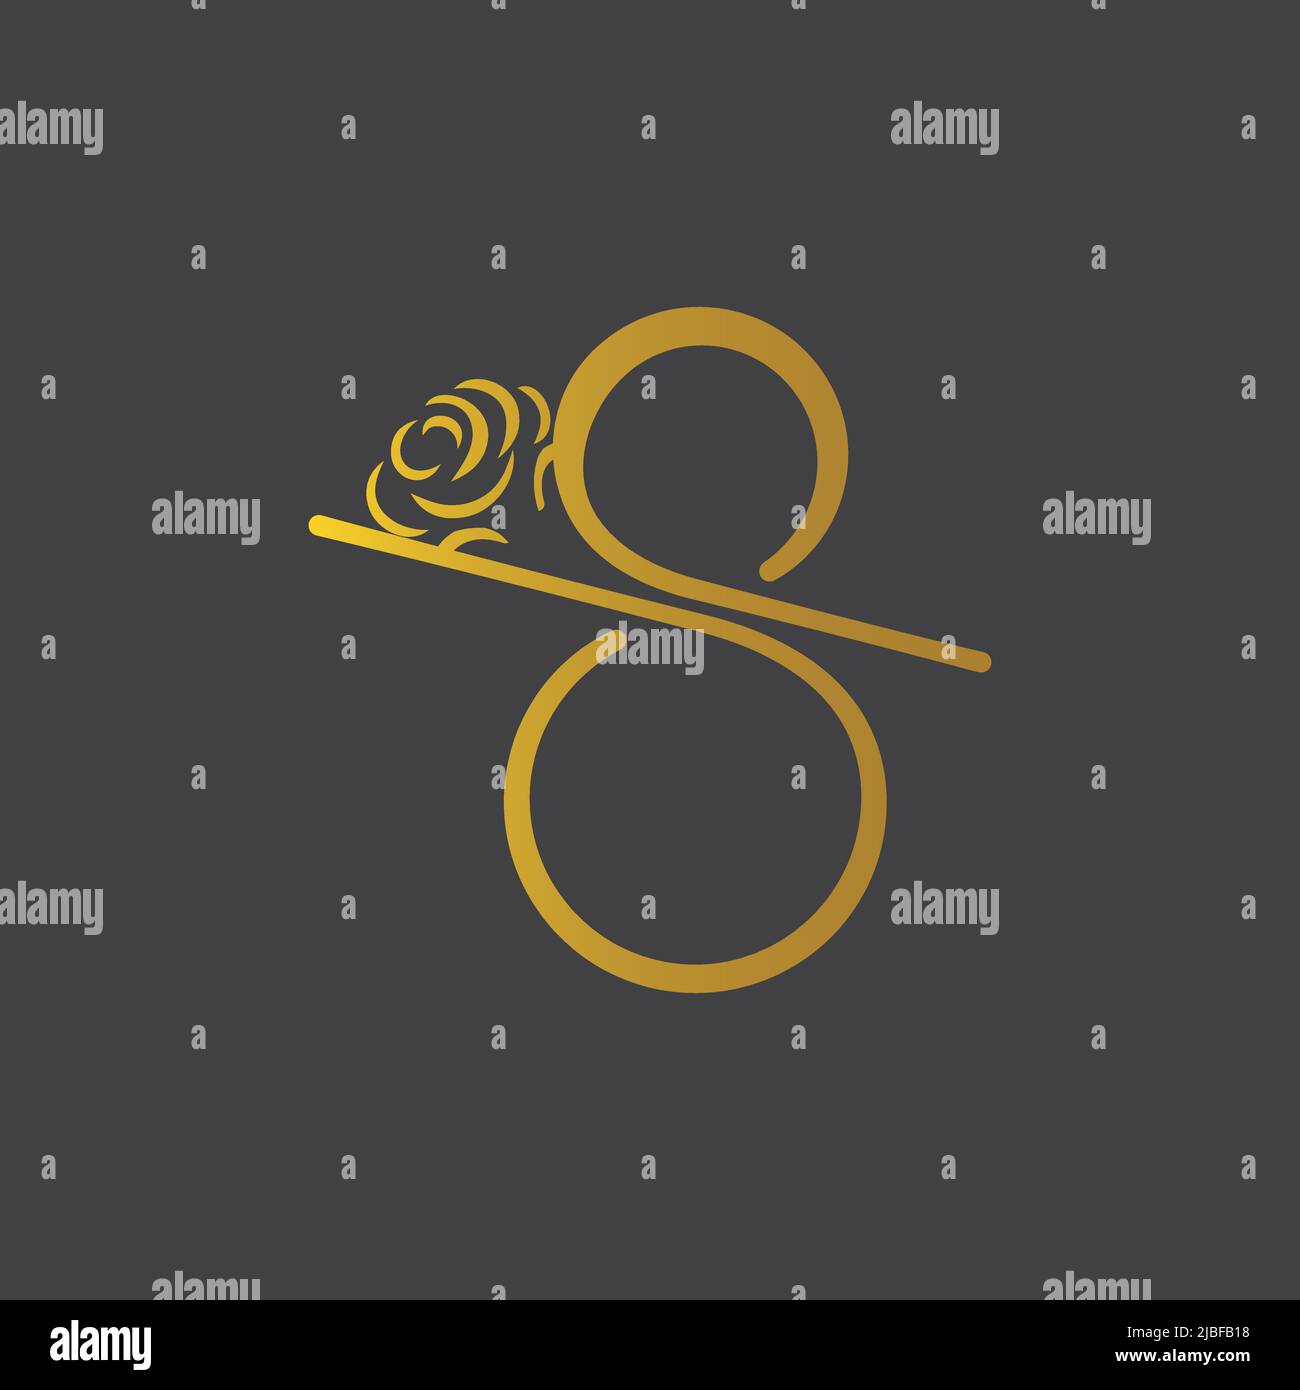 Immagine vettoriale con icona a 8 simboli Infinity. Illustrazione vettoriale EPS.8 EPS.10 Illustrazione Vettoriale